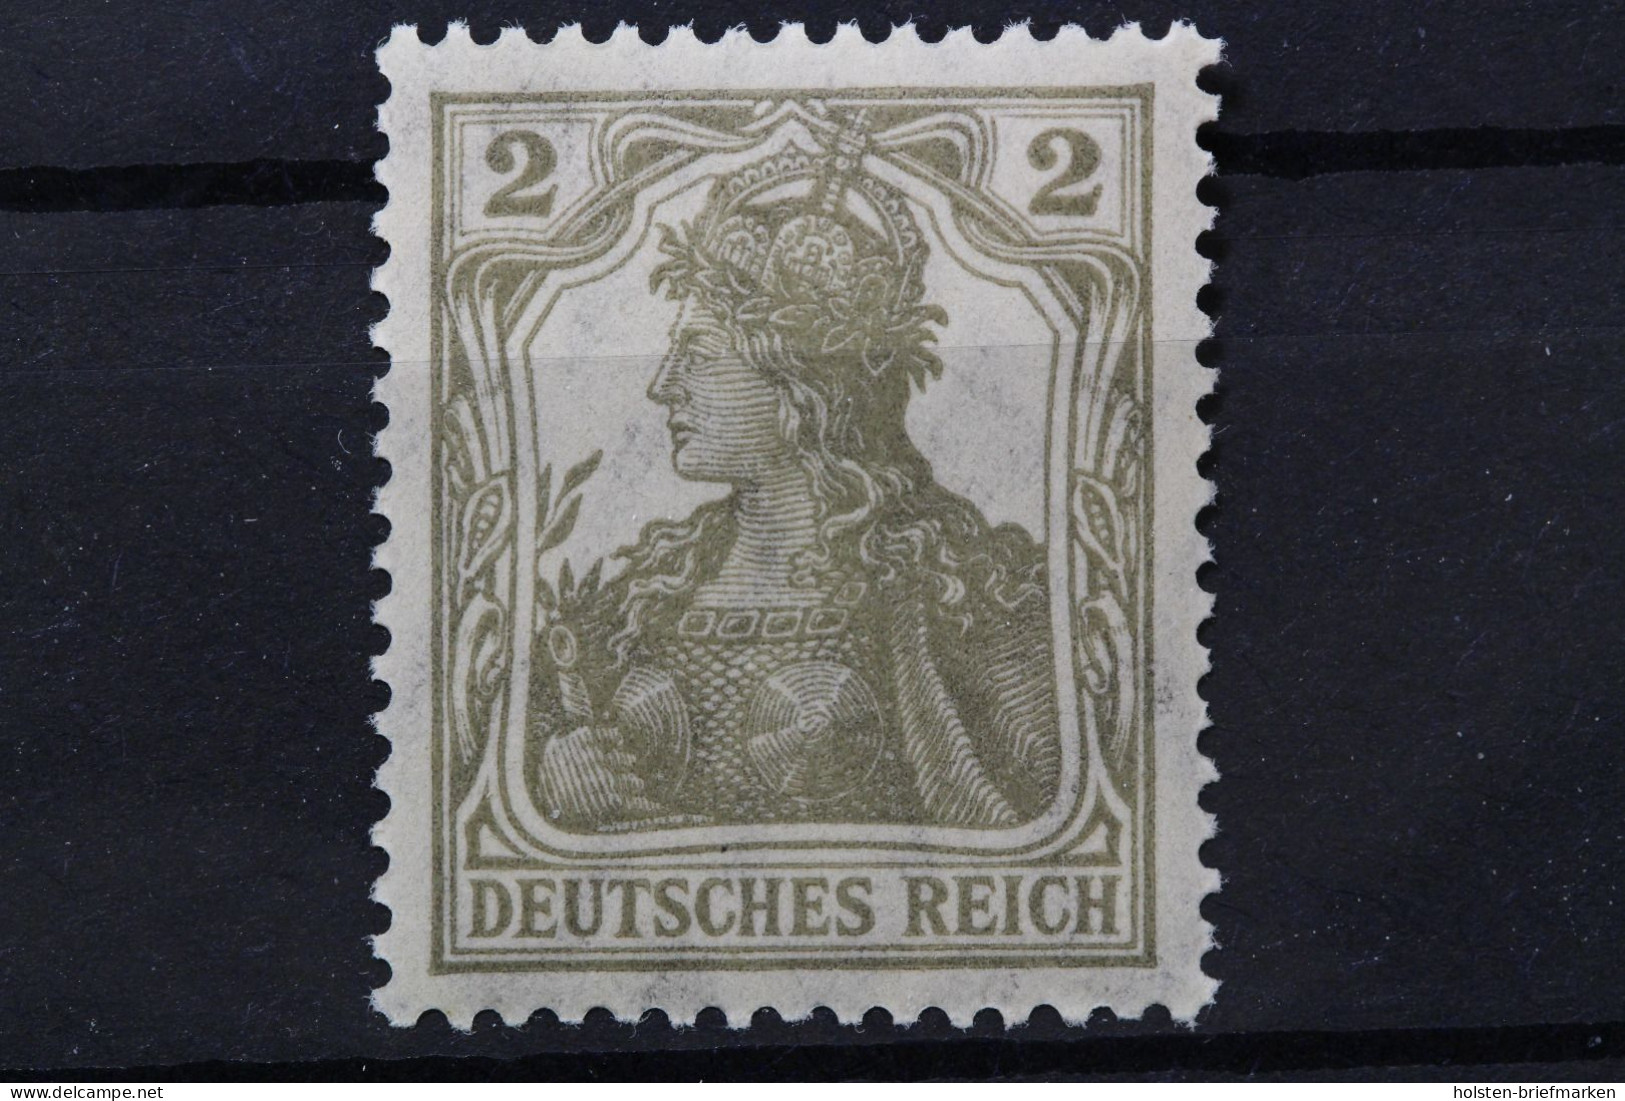 Deutsches Reich, MiNr. 102 X, Postfrisch, Geprüft Infla - Unused Stamps